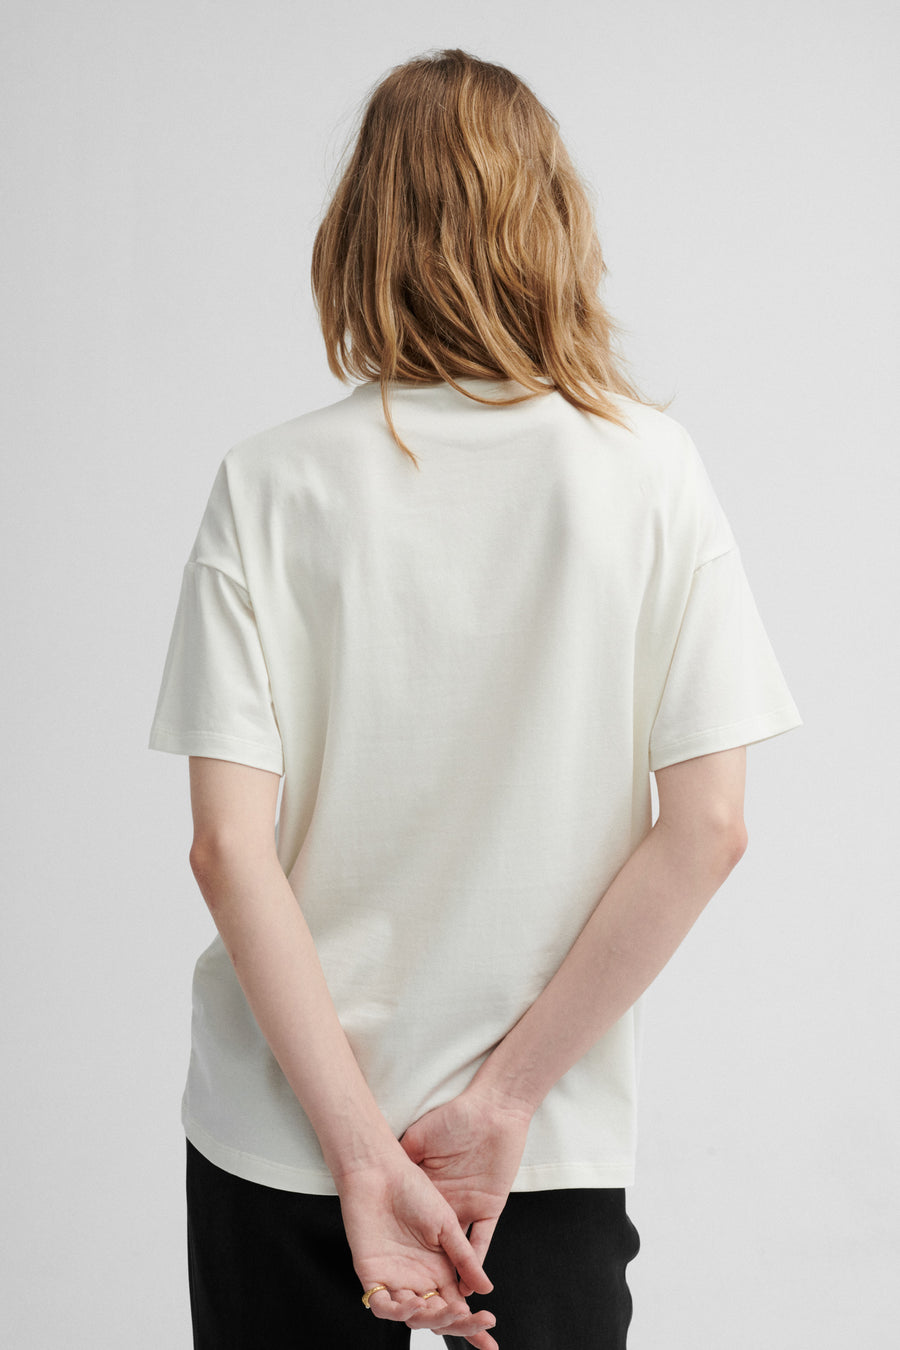 T-shirt in organic cotton / 13 / 27 / cream white